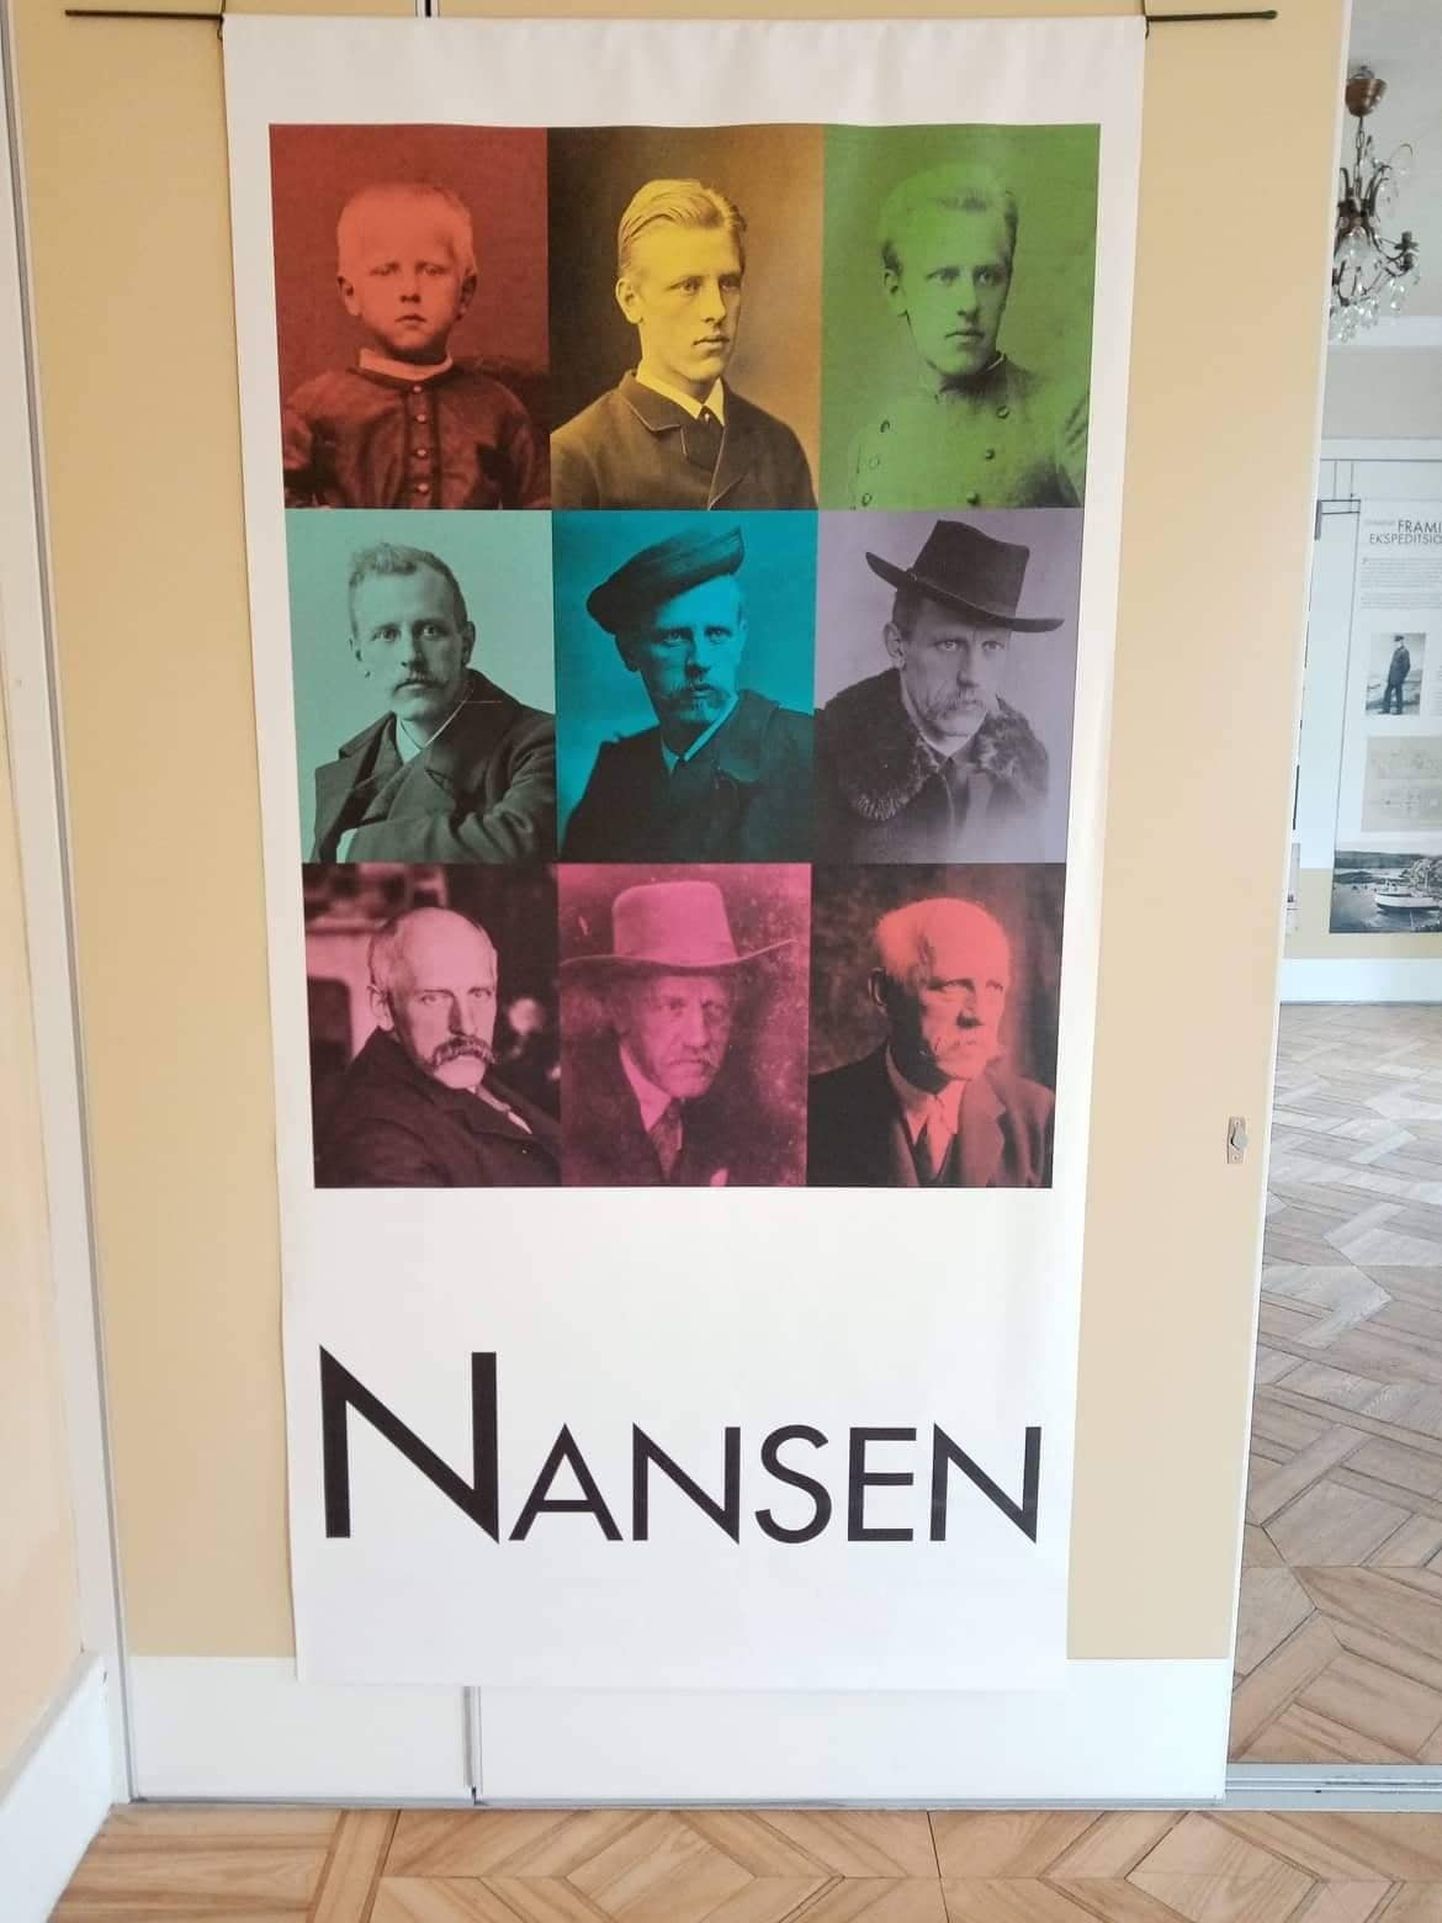 Kahe polaarekspeditsiooniga kuulsaks saanud Nansen pälvis hiljem tuntust ka riigimehe ja humanistina.